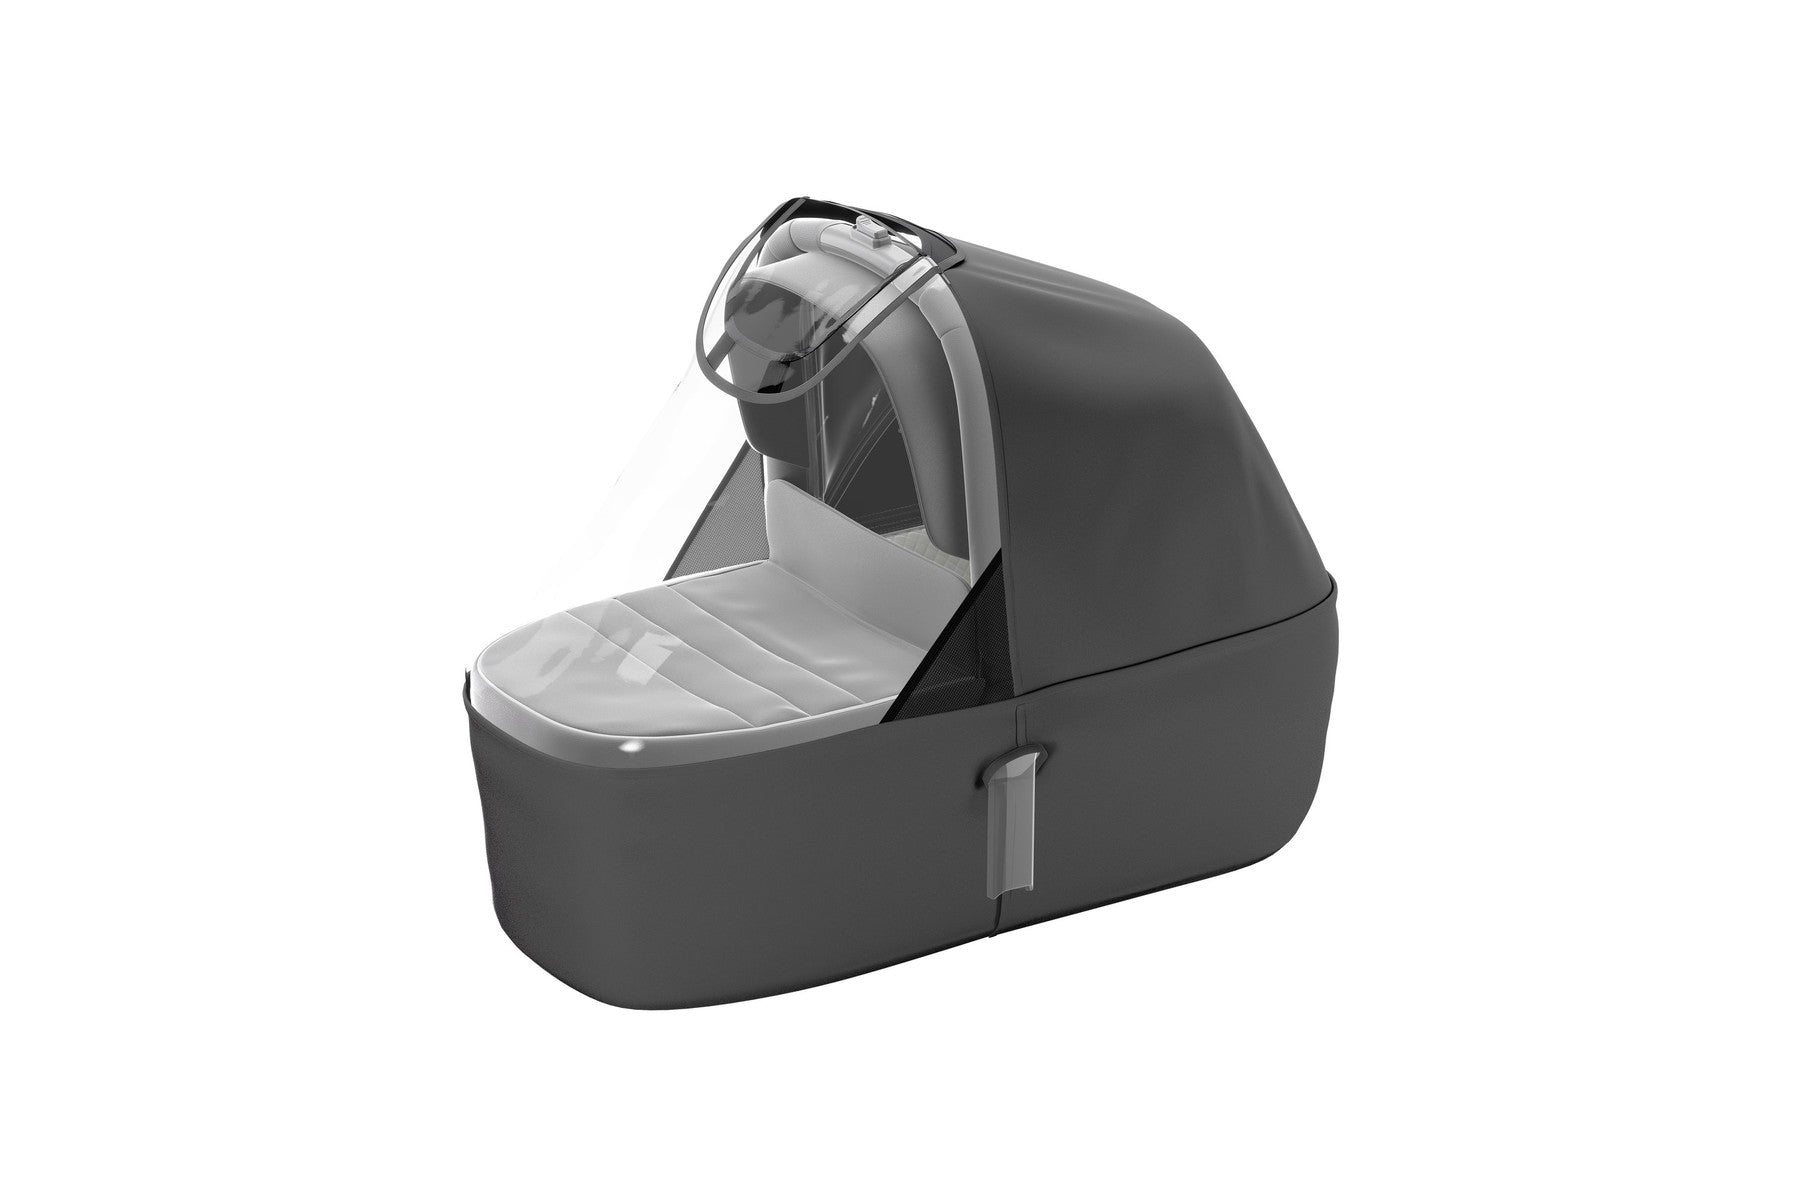 THULE Sleek Bassinet For Stroller - ANB Baby -$100 - $300